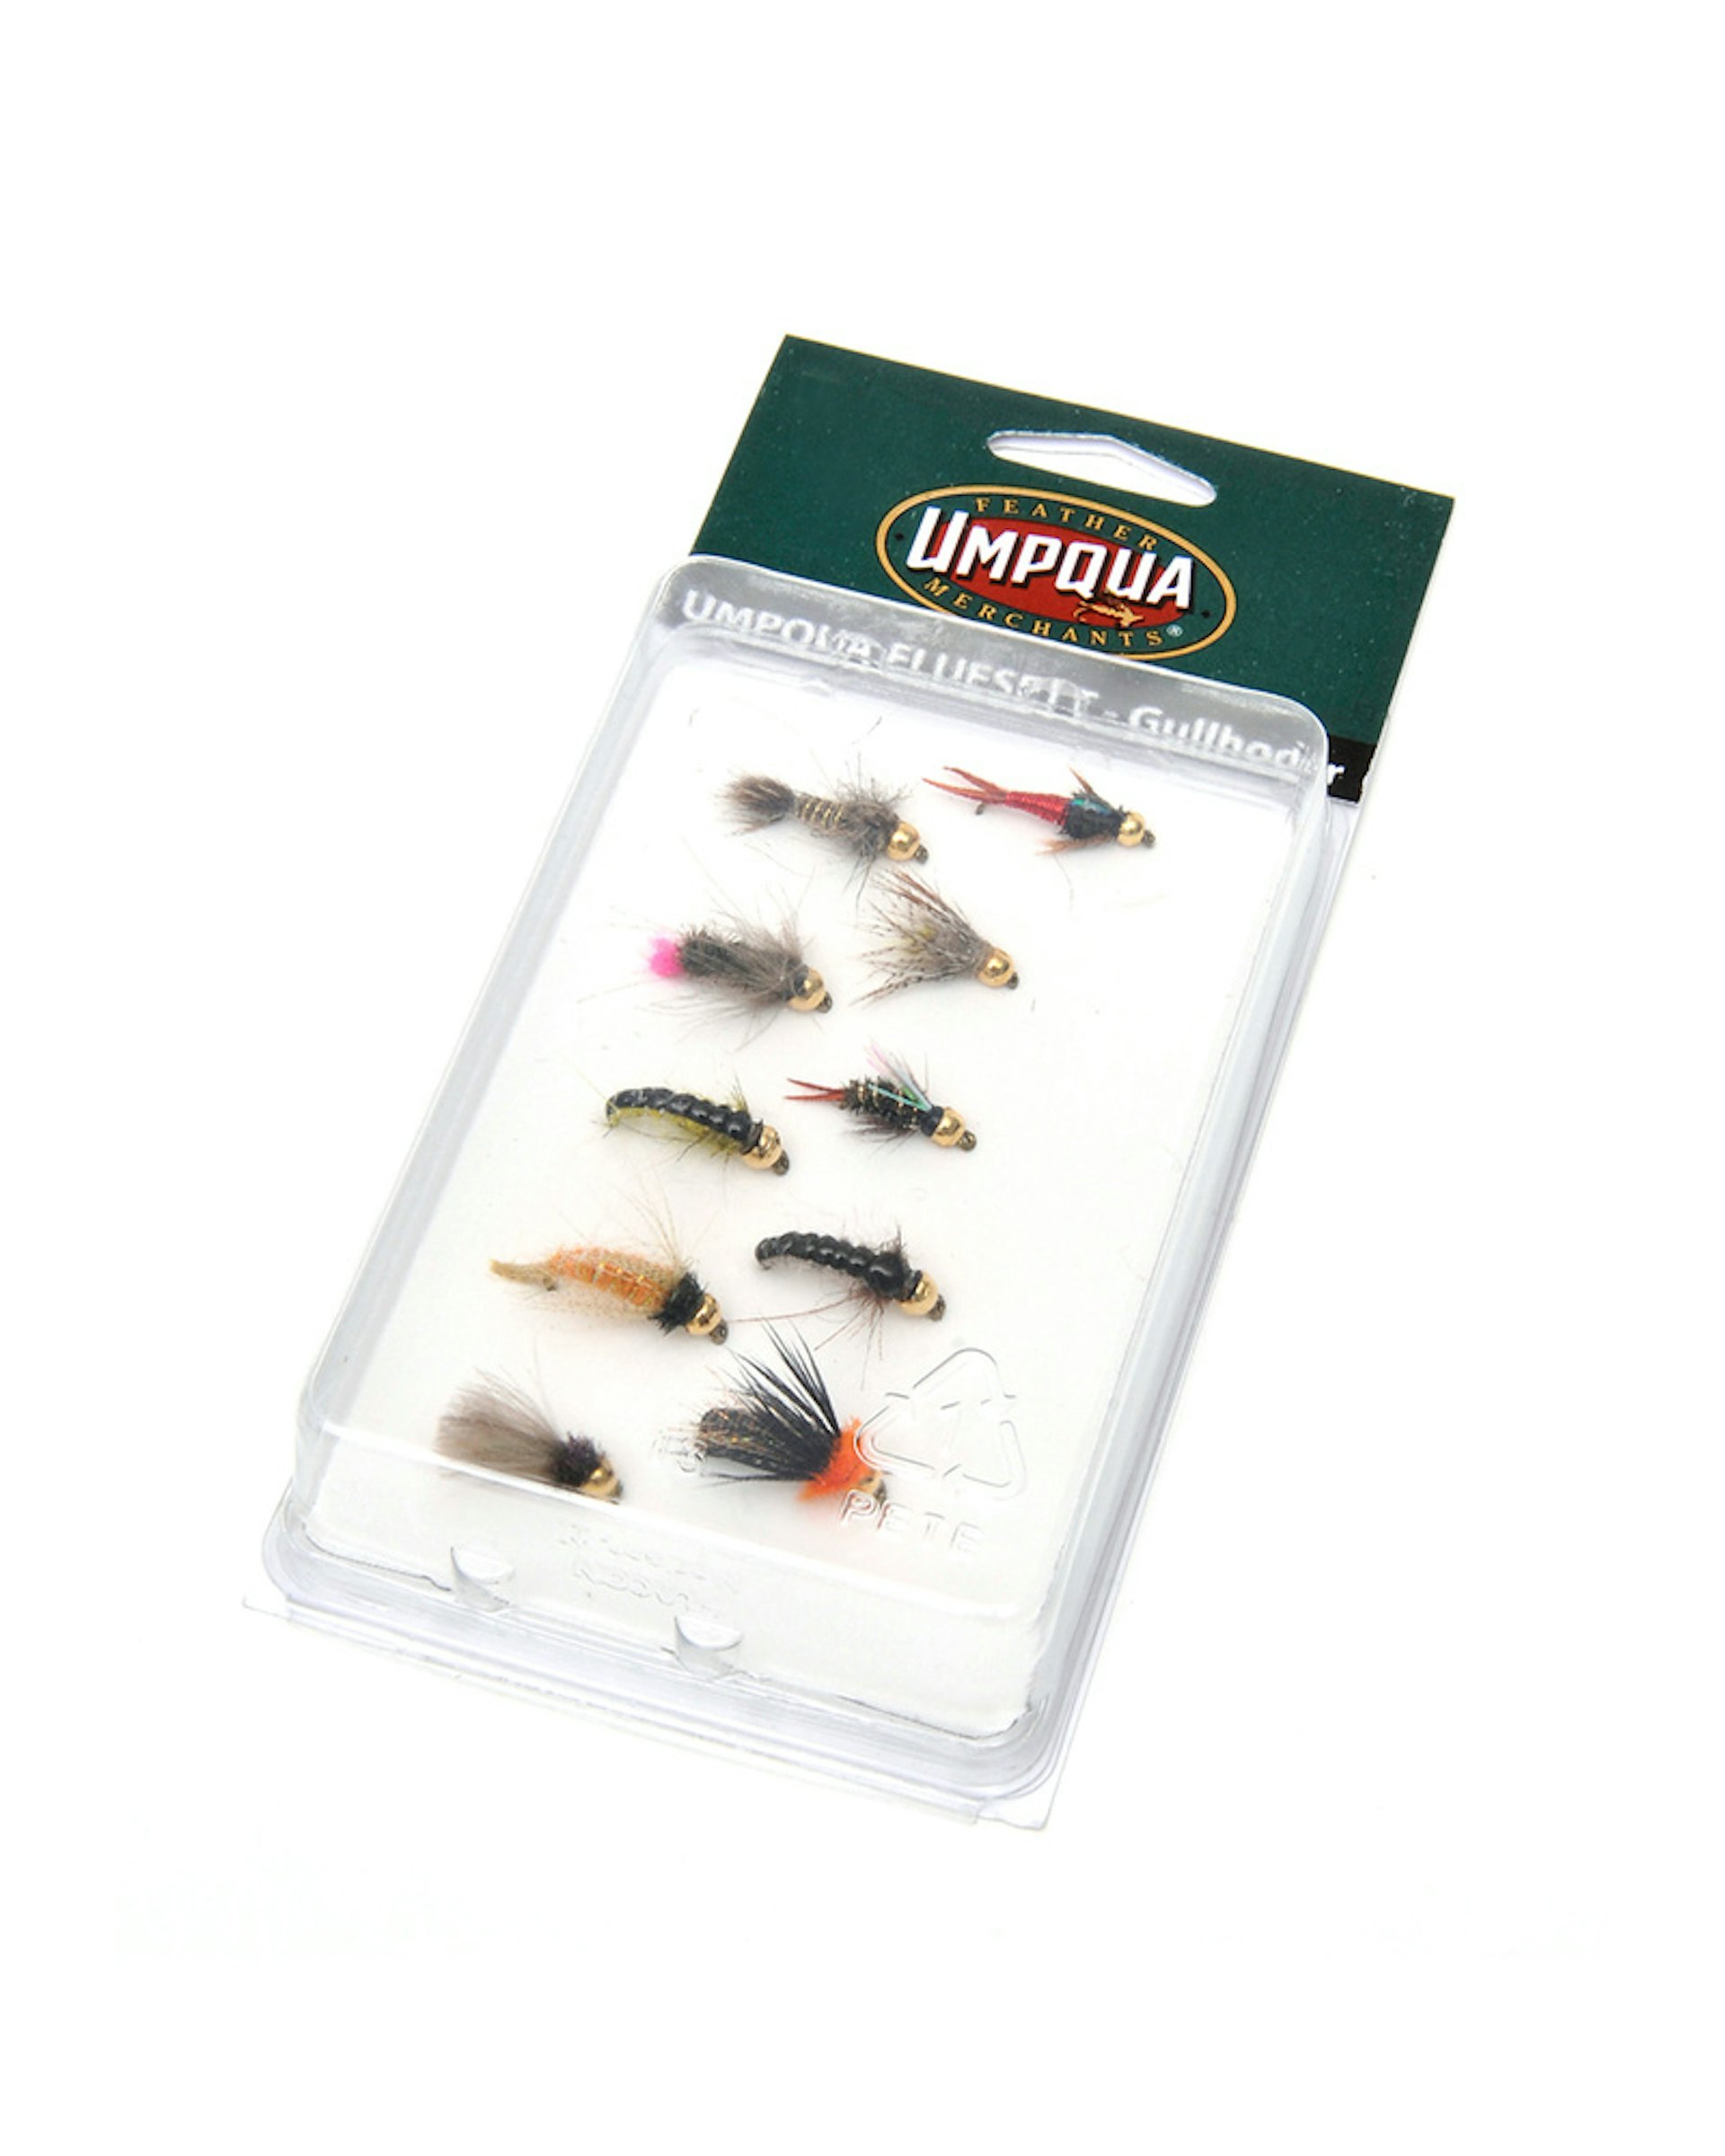 Fly Kits - Fly kits for Salmon, Fly kits for Trout fishing